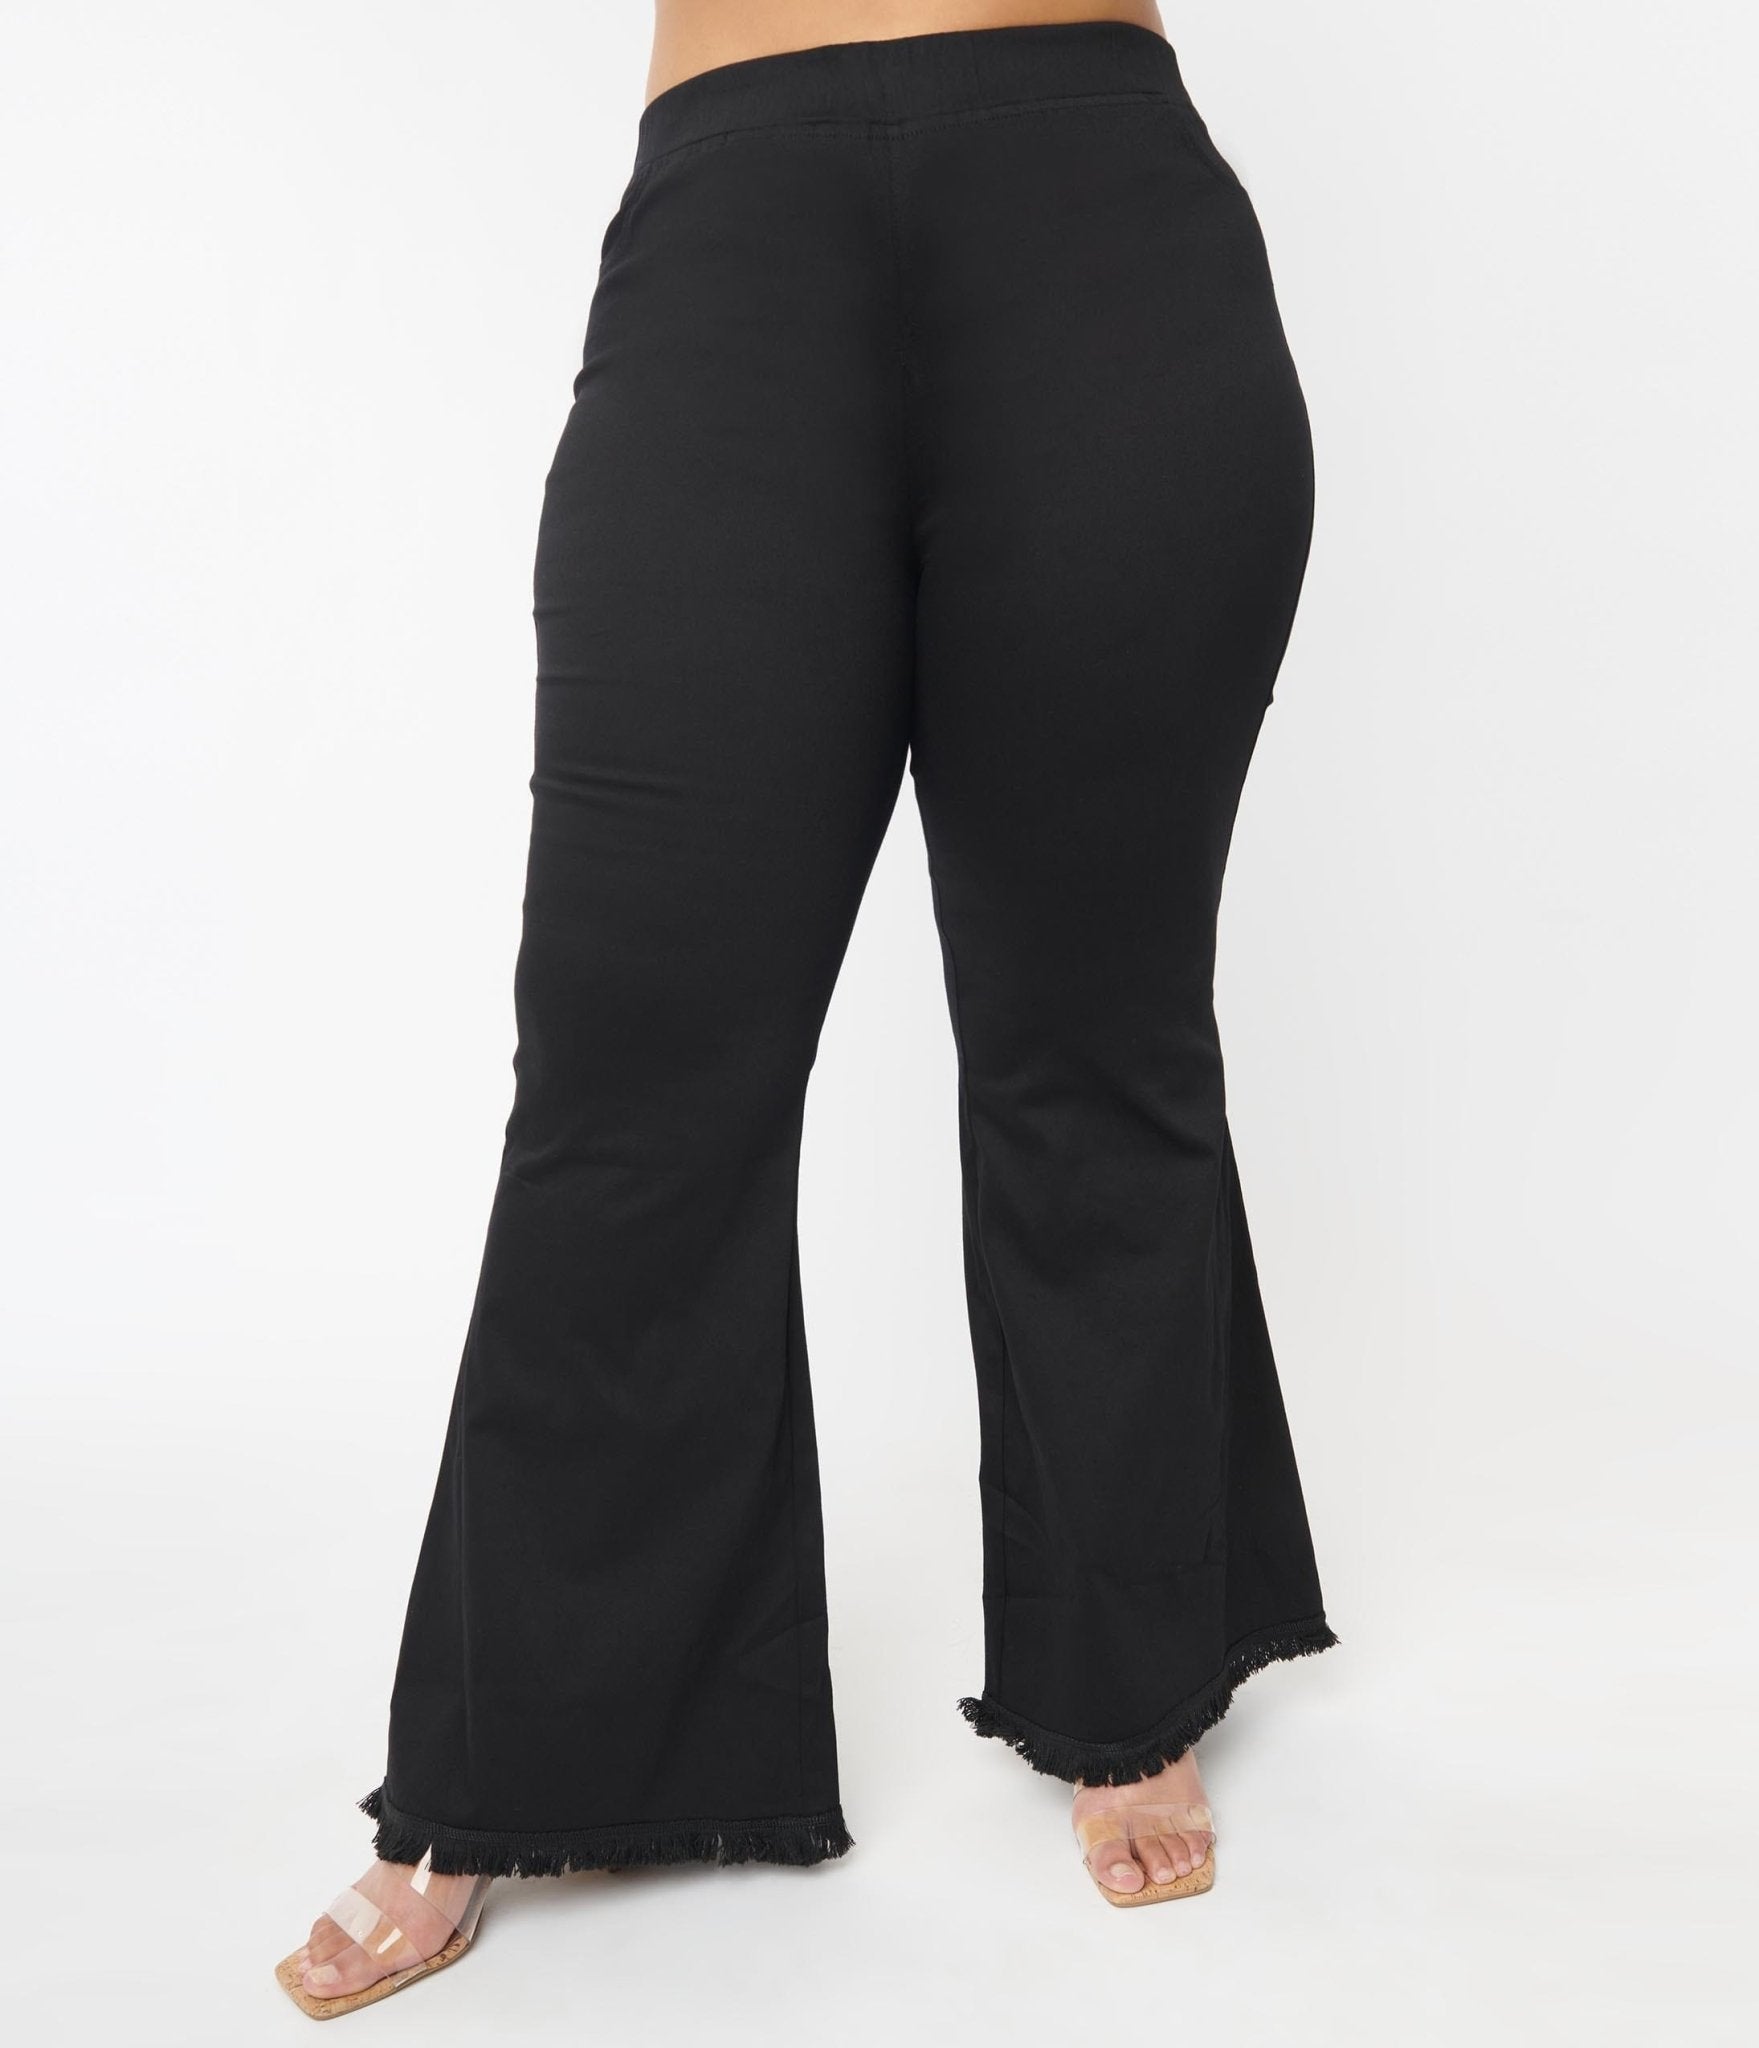 https://www.unique-vintage.com/cdn/shop/products/plus-size-black-wide-flare-leg-pants-945288.jpg?v=1703096783&width=1920